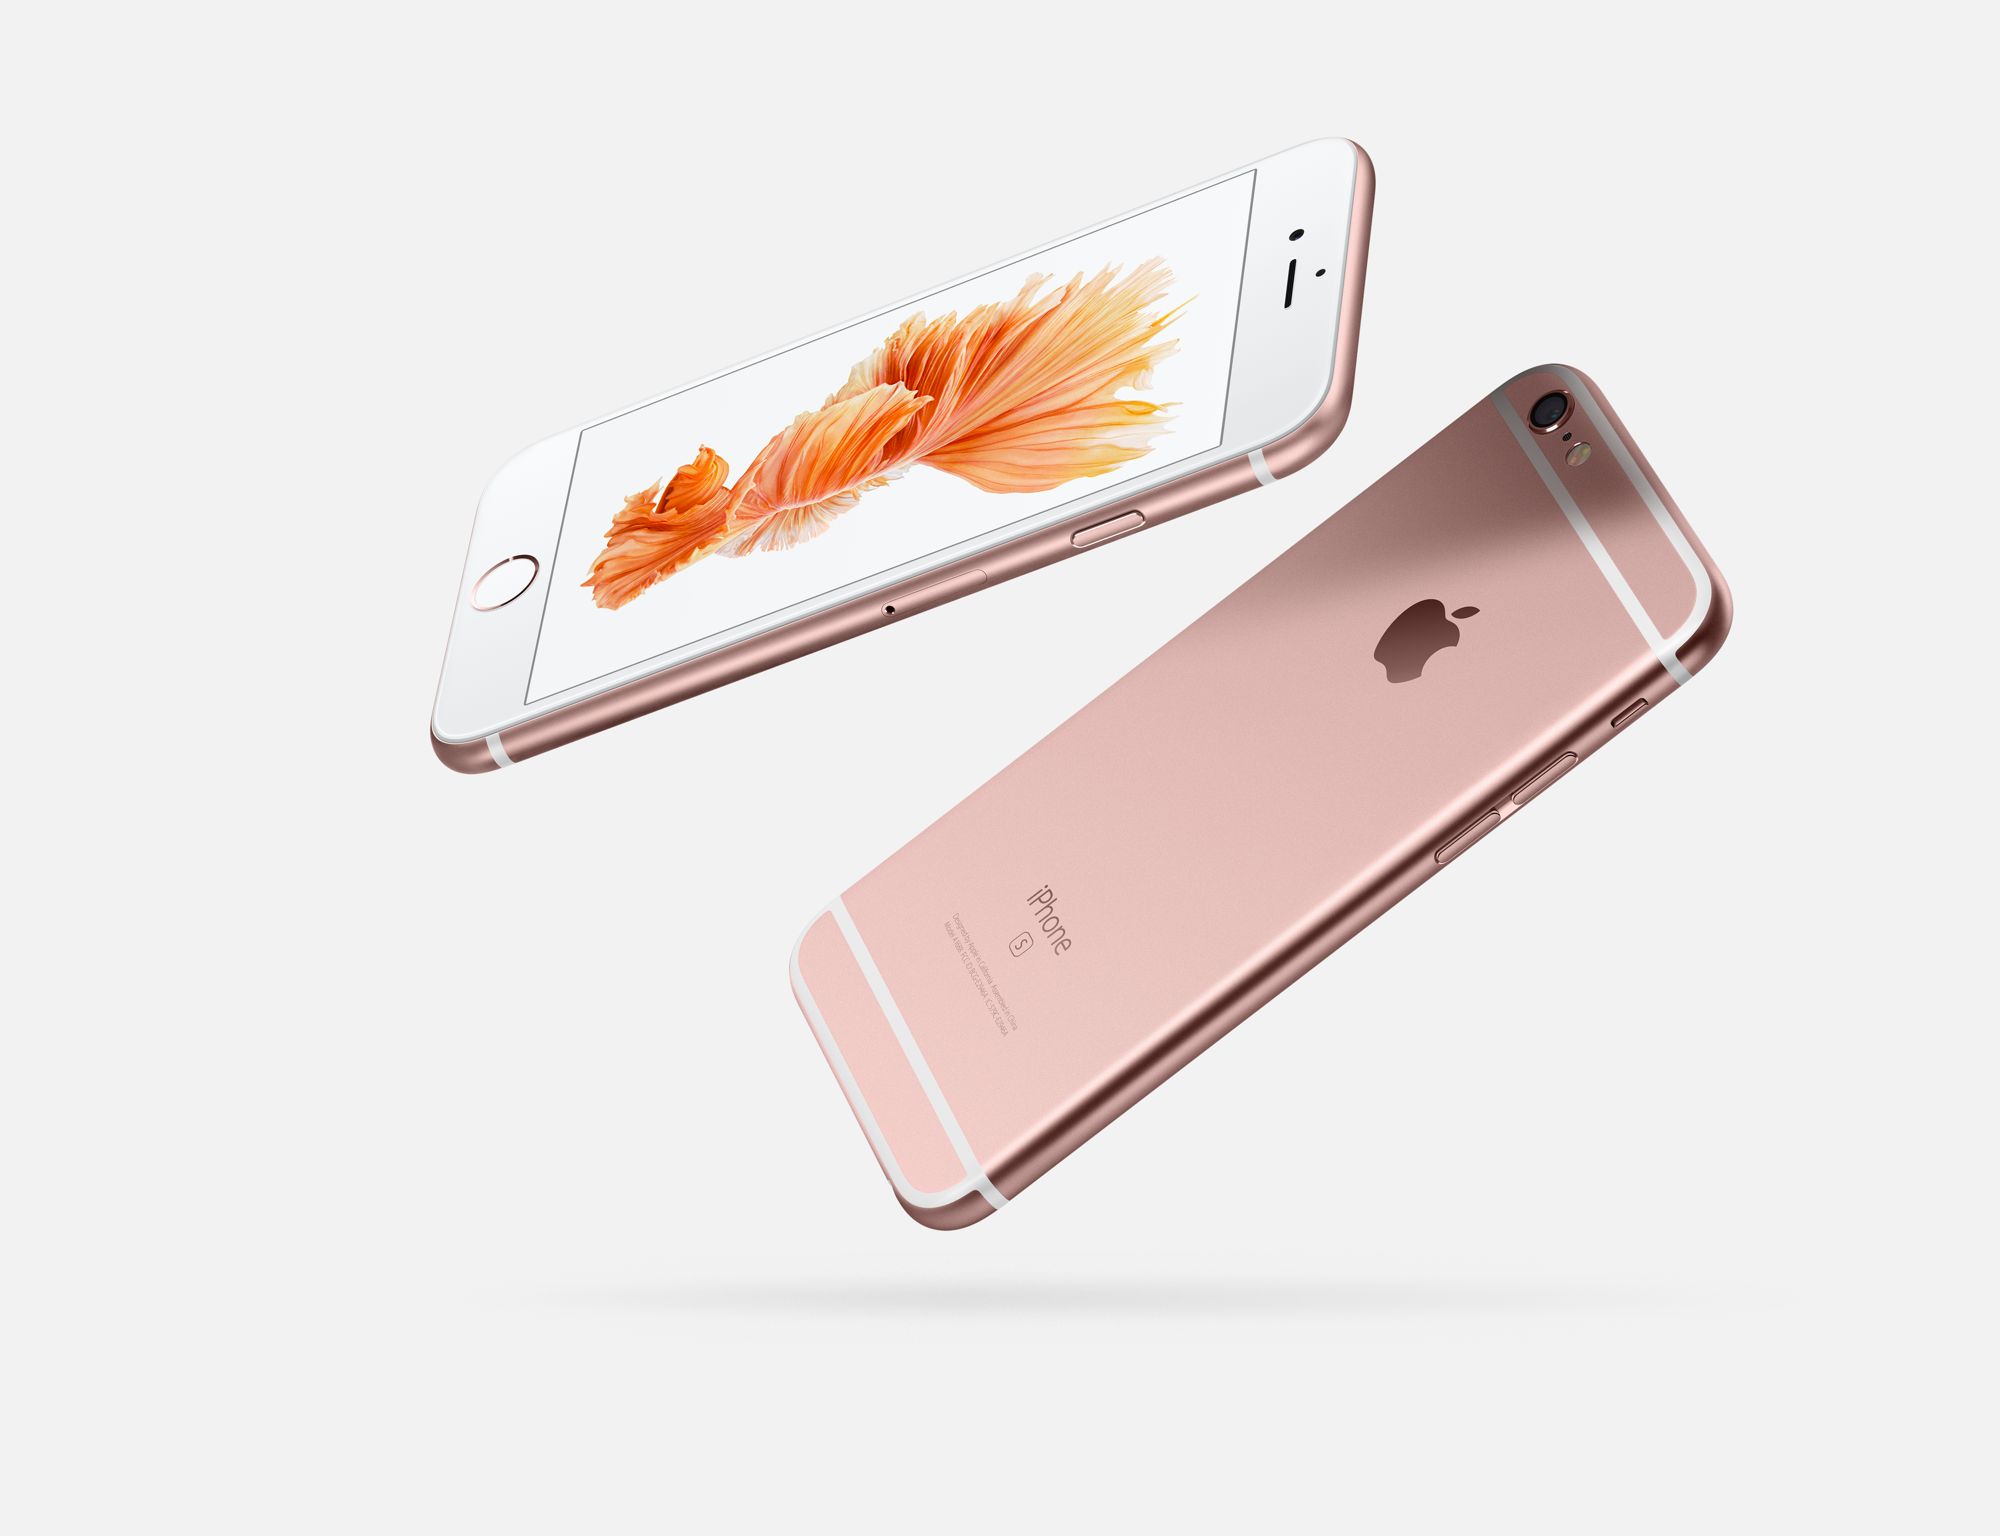 Immagine pubblicata in relazione al seguente contenuto: Apple potrebbe lanciare un iPhone 7 Plus con memoria interna da 256GB | Nome immagine: news23584_Apple-iPhone-6s_2.jpg